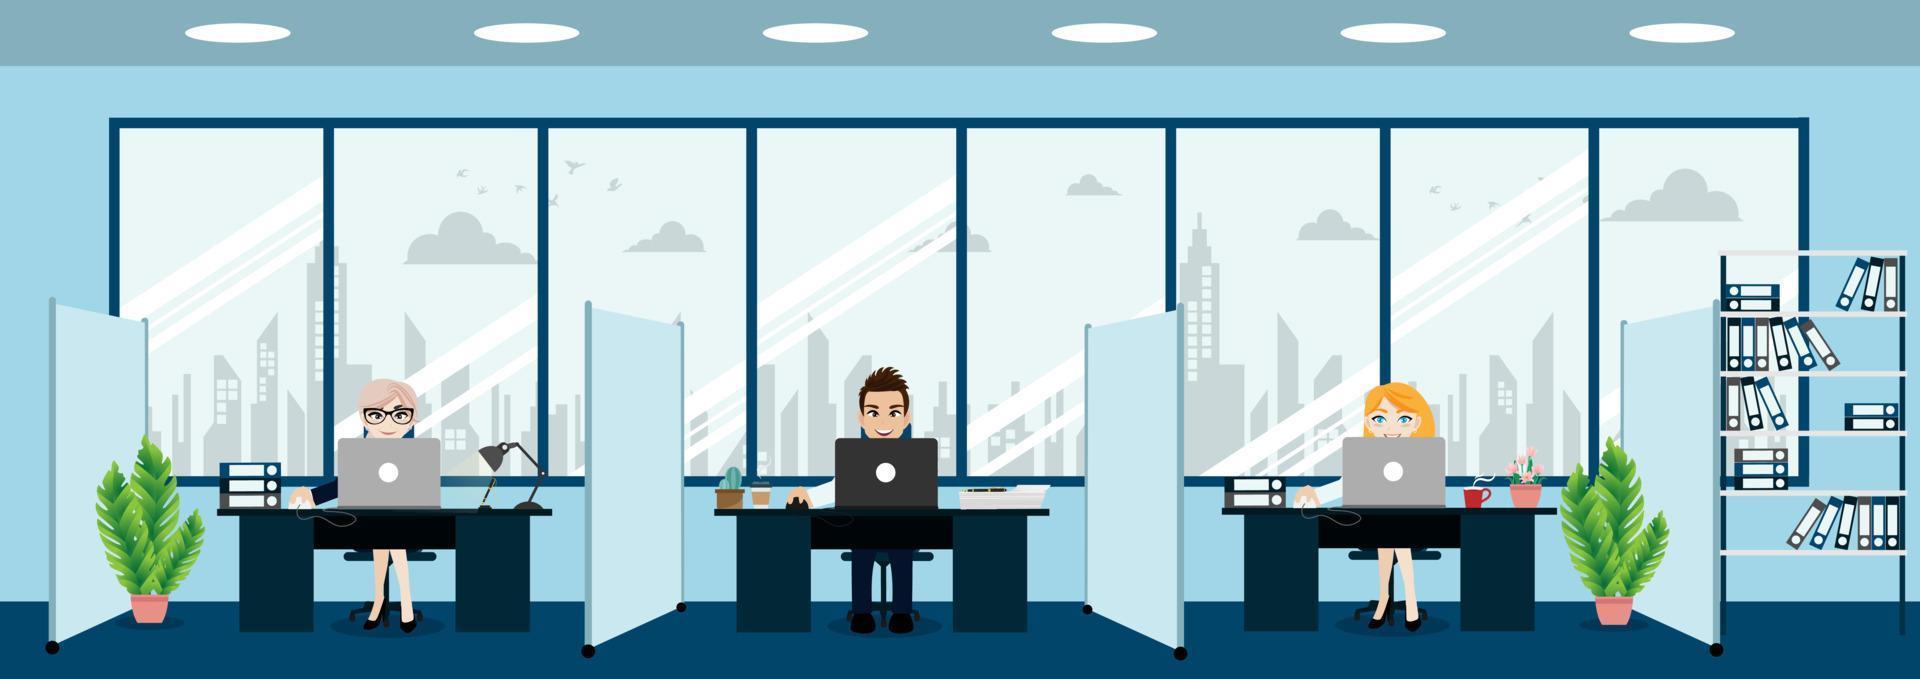 gente de negocios, interior de oficina moderna con jefe y empleados. espacio de trabajo de oficina creativa y vector de estilo de personaje de dibujos animados